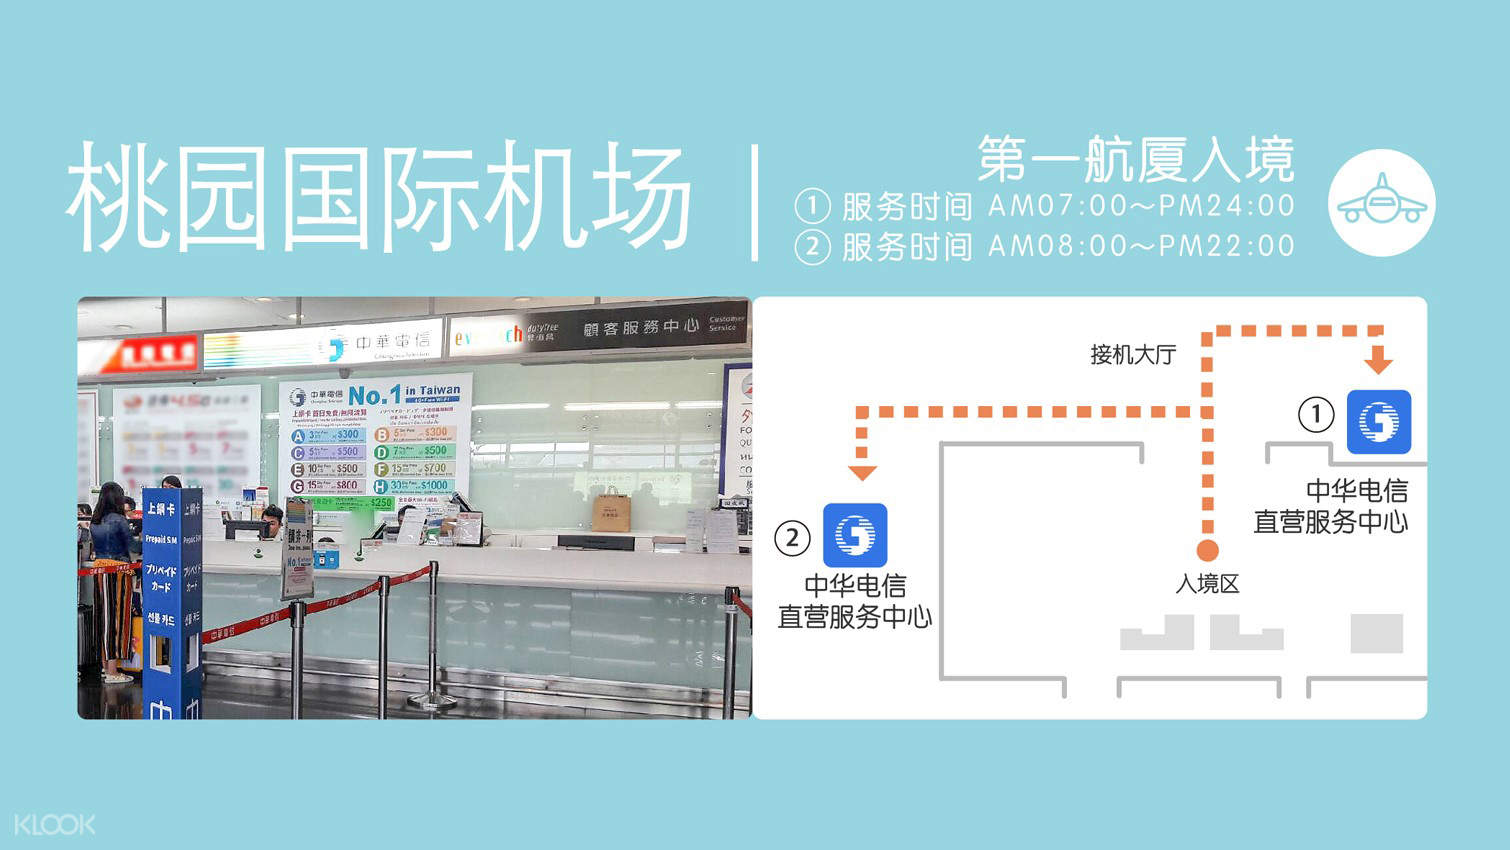 台湾中华电信4g无限流量sim卡 Klook客路中国